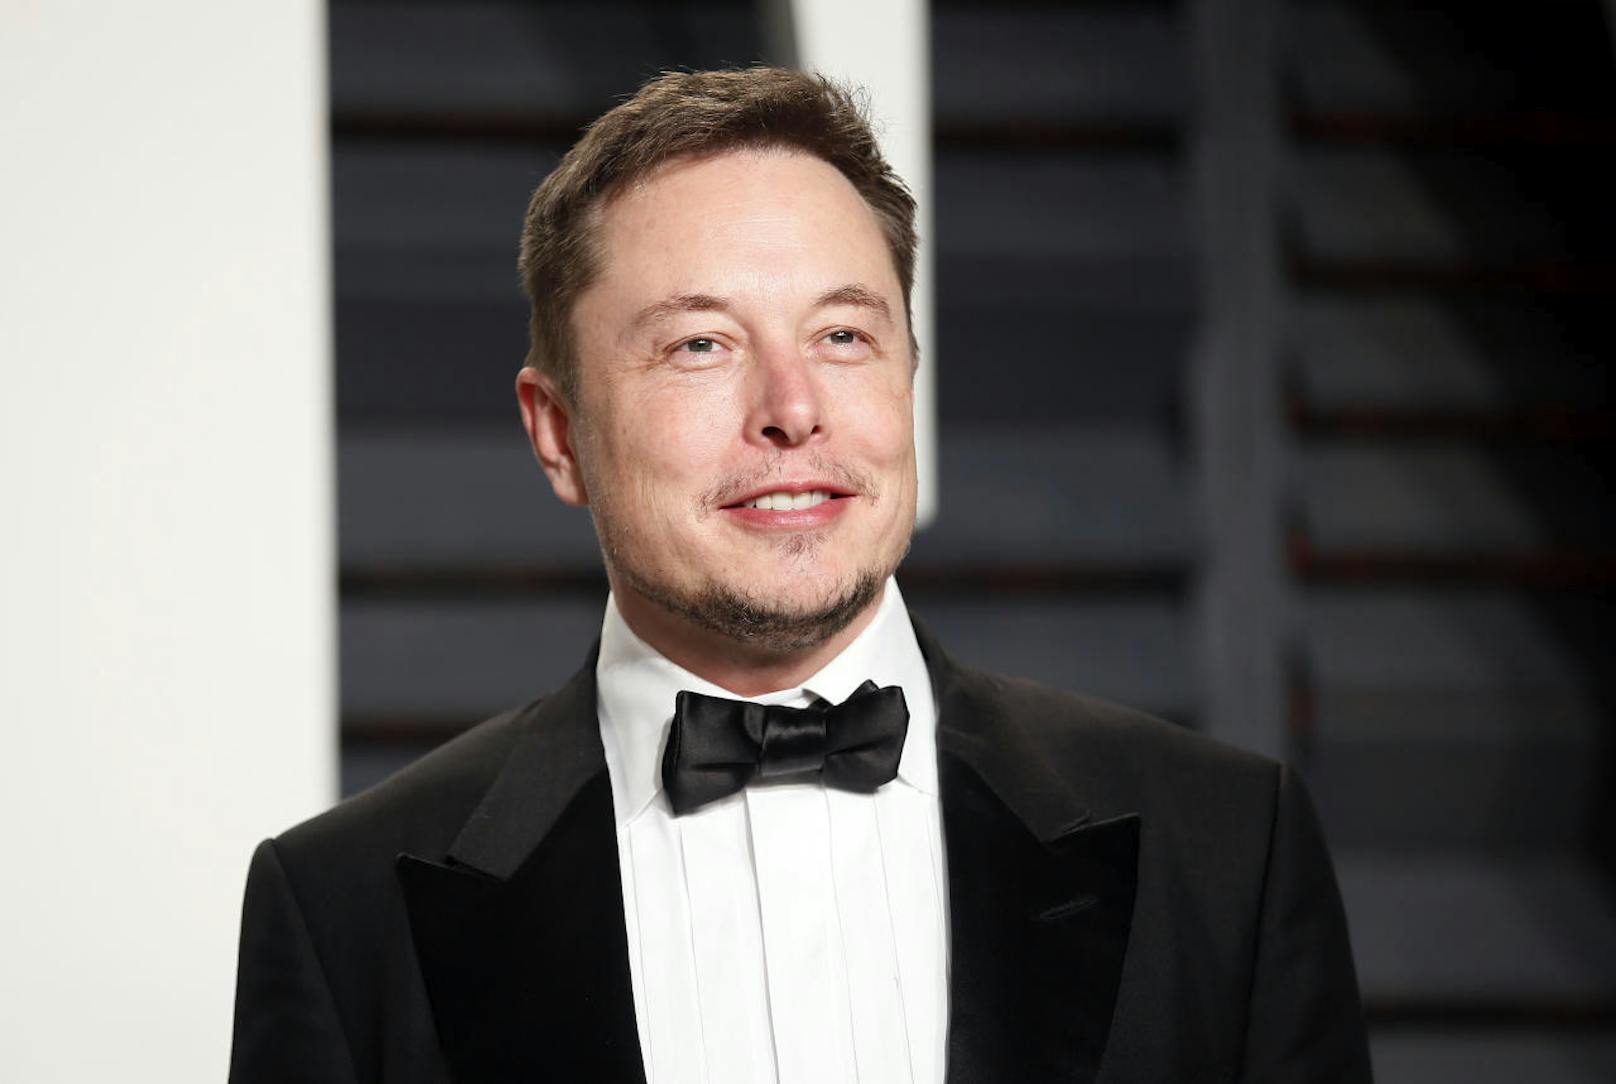 <strong>Platz 7:</strong> Tesla-, SpaceX- und neuralink-Gründer Elon Musk - 68&nbsp;Mrd. Dollar